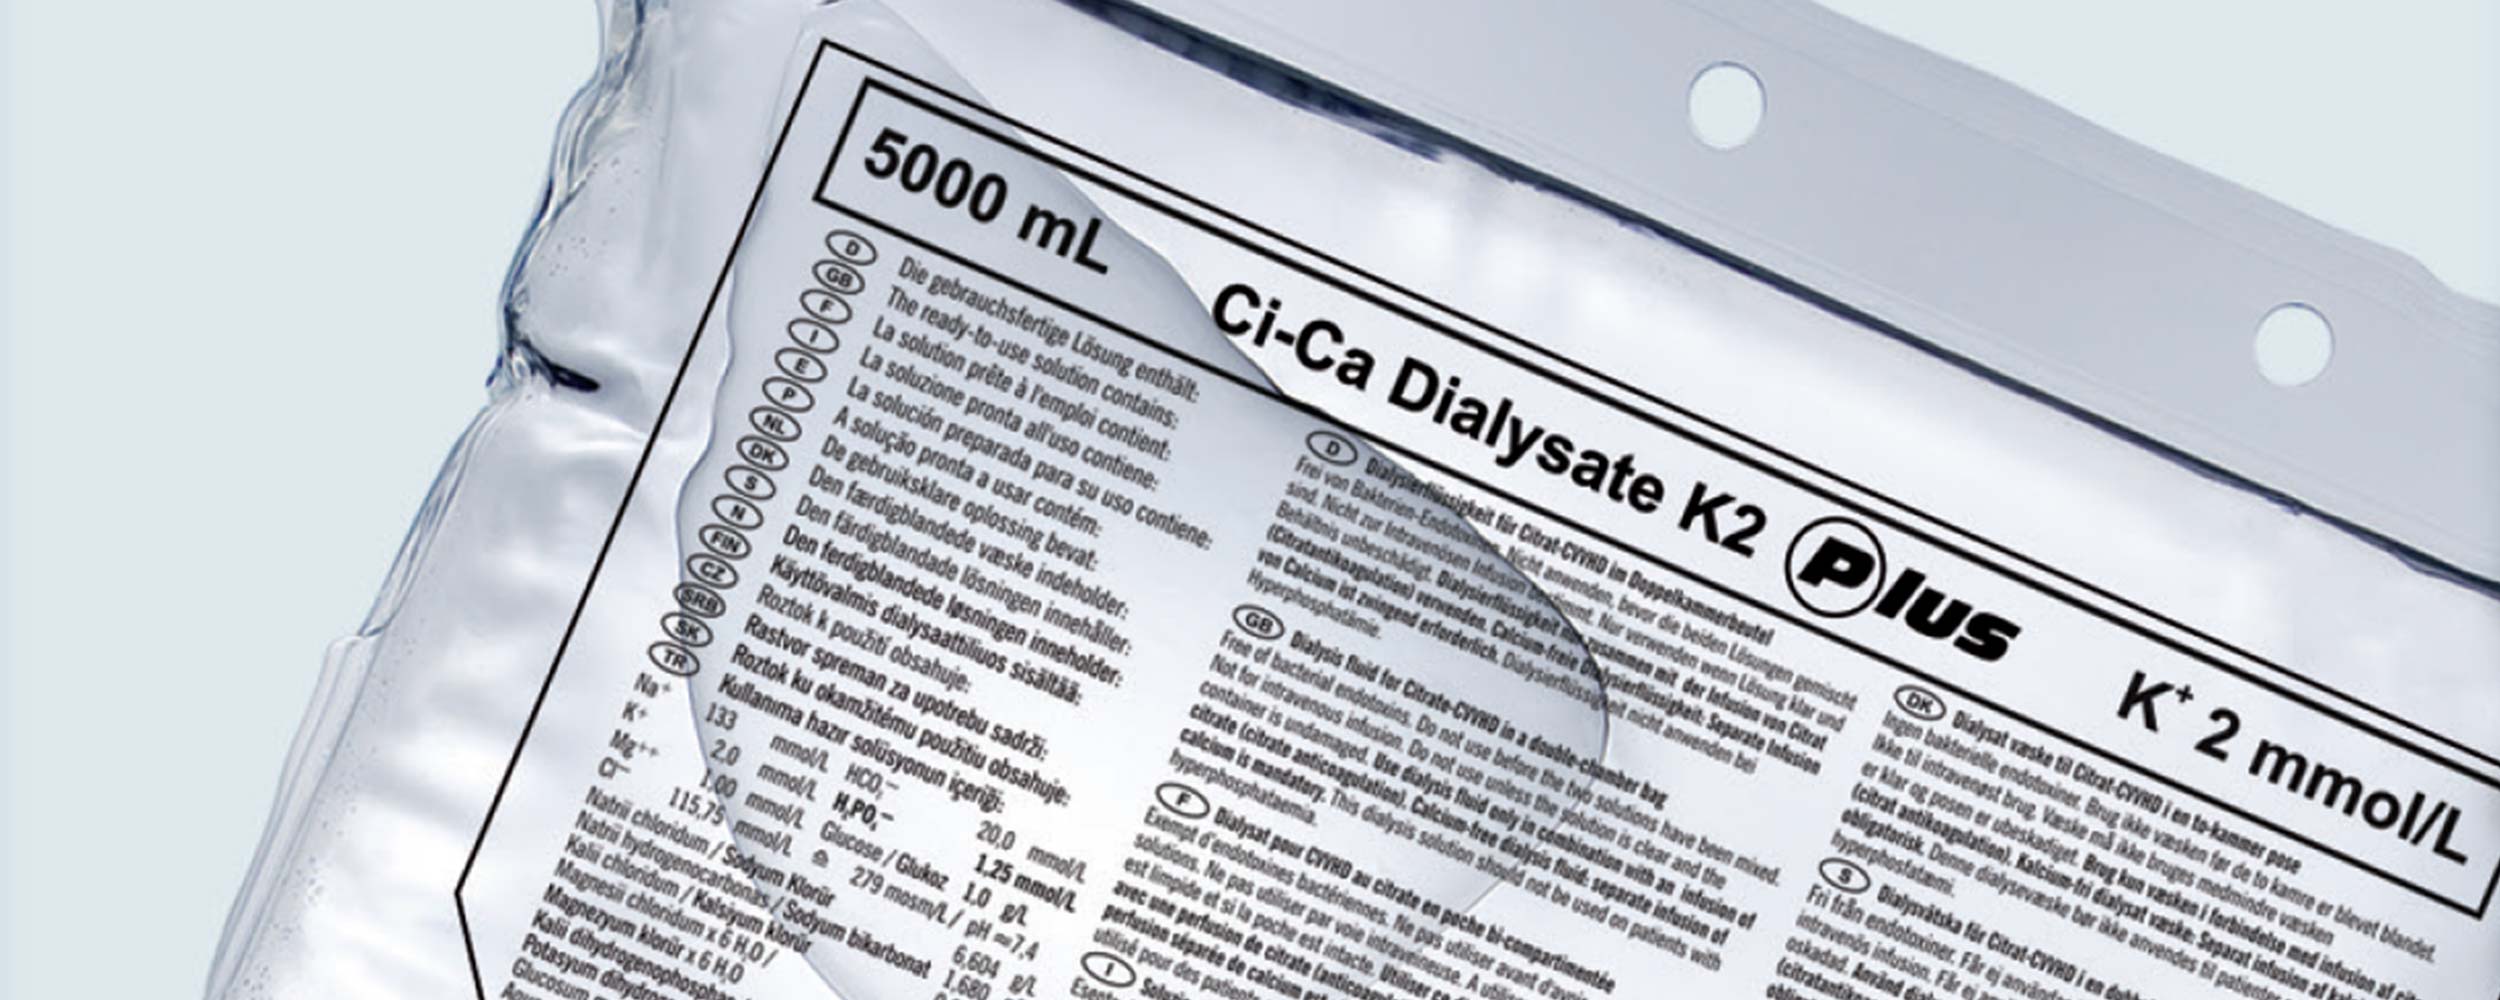 Bolsa de solución Ci-Ca® Dialysate Plus